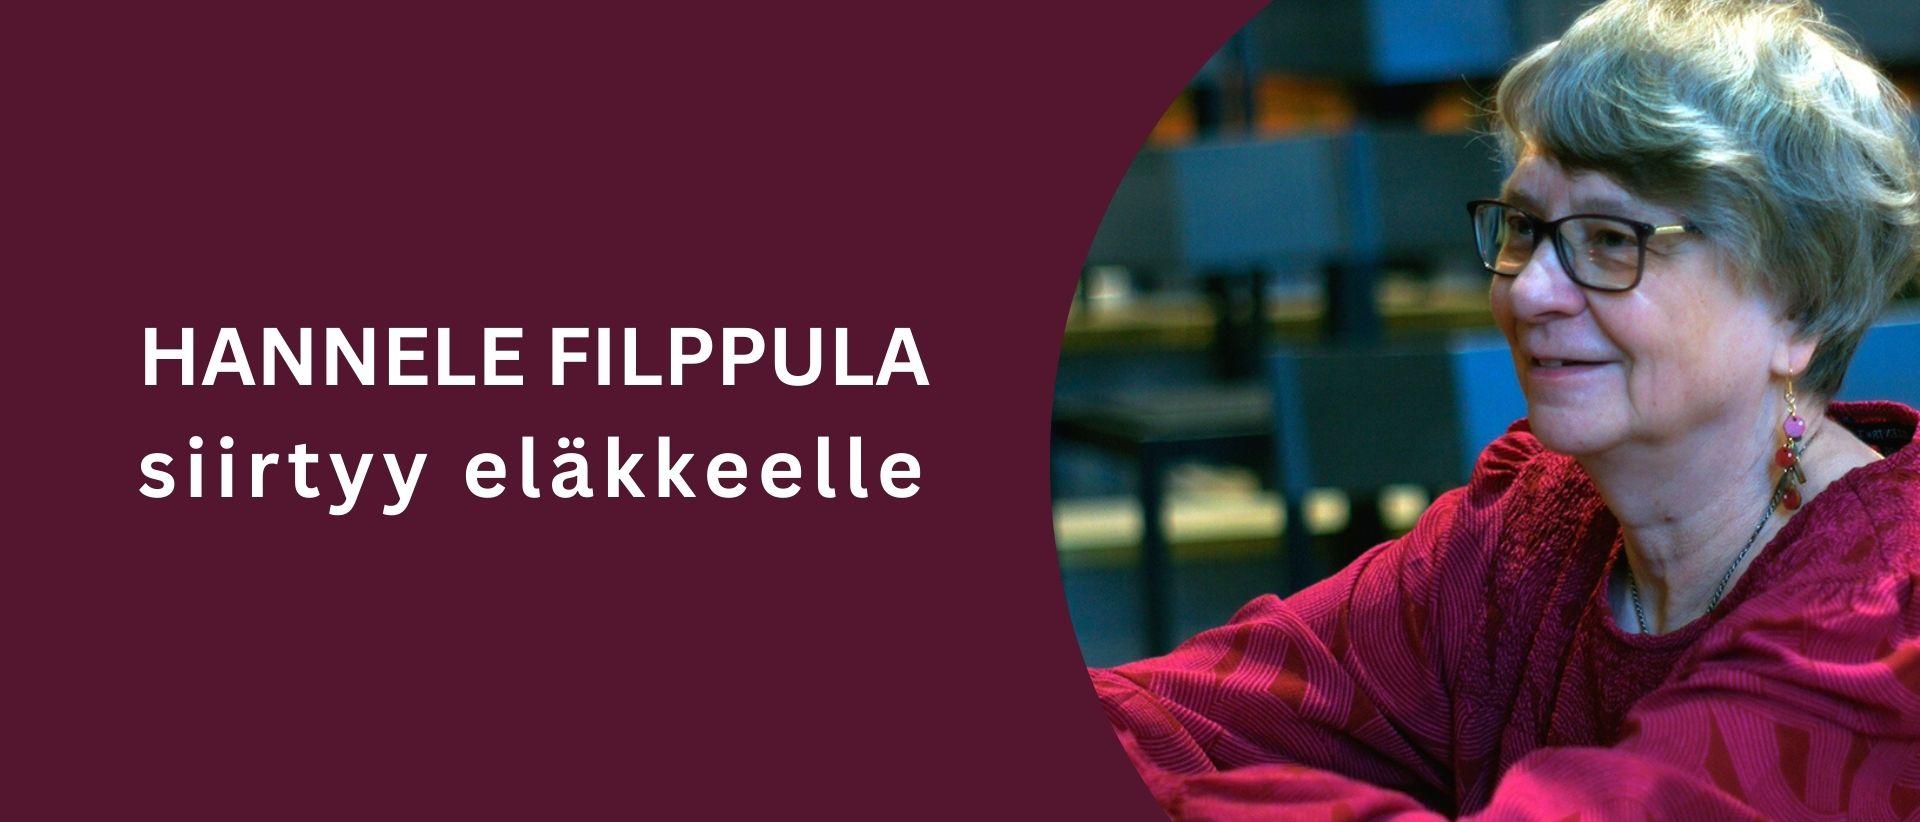 Hannele Filppula nojaa flyygeliin, sivuprofiili. Teksti Hannele Filppulla siirtyy eläkkeelle.